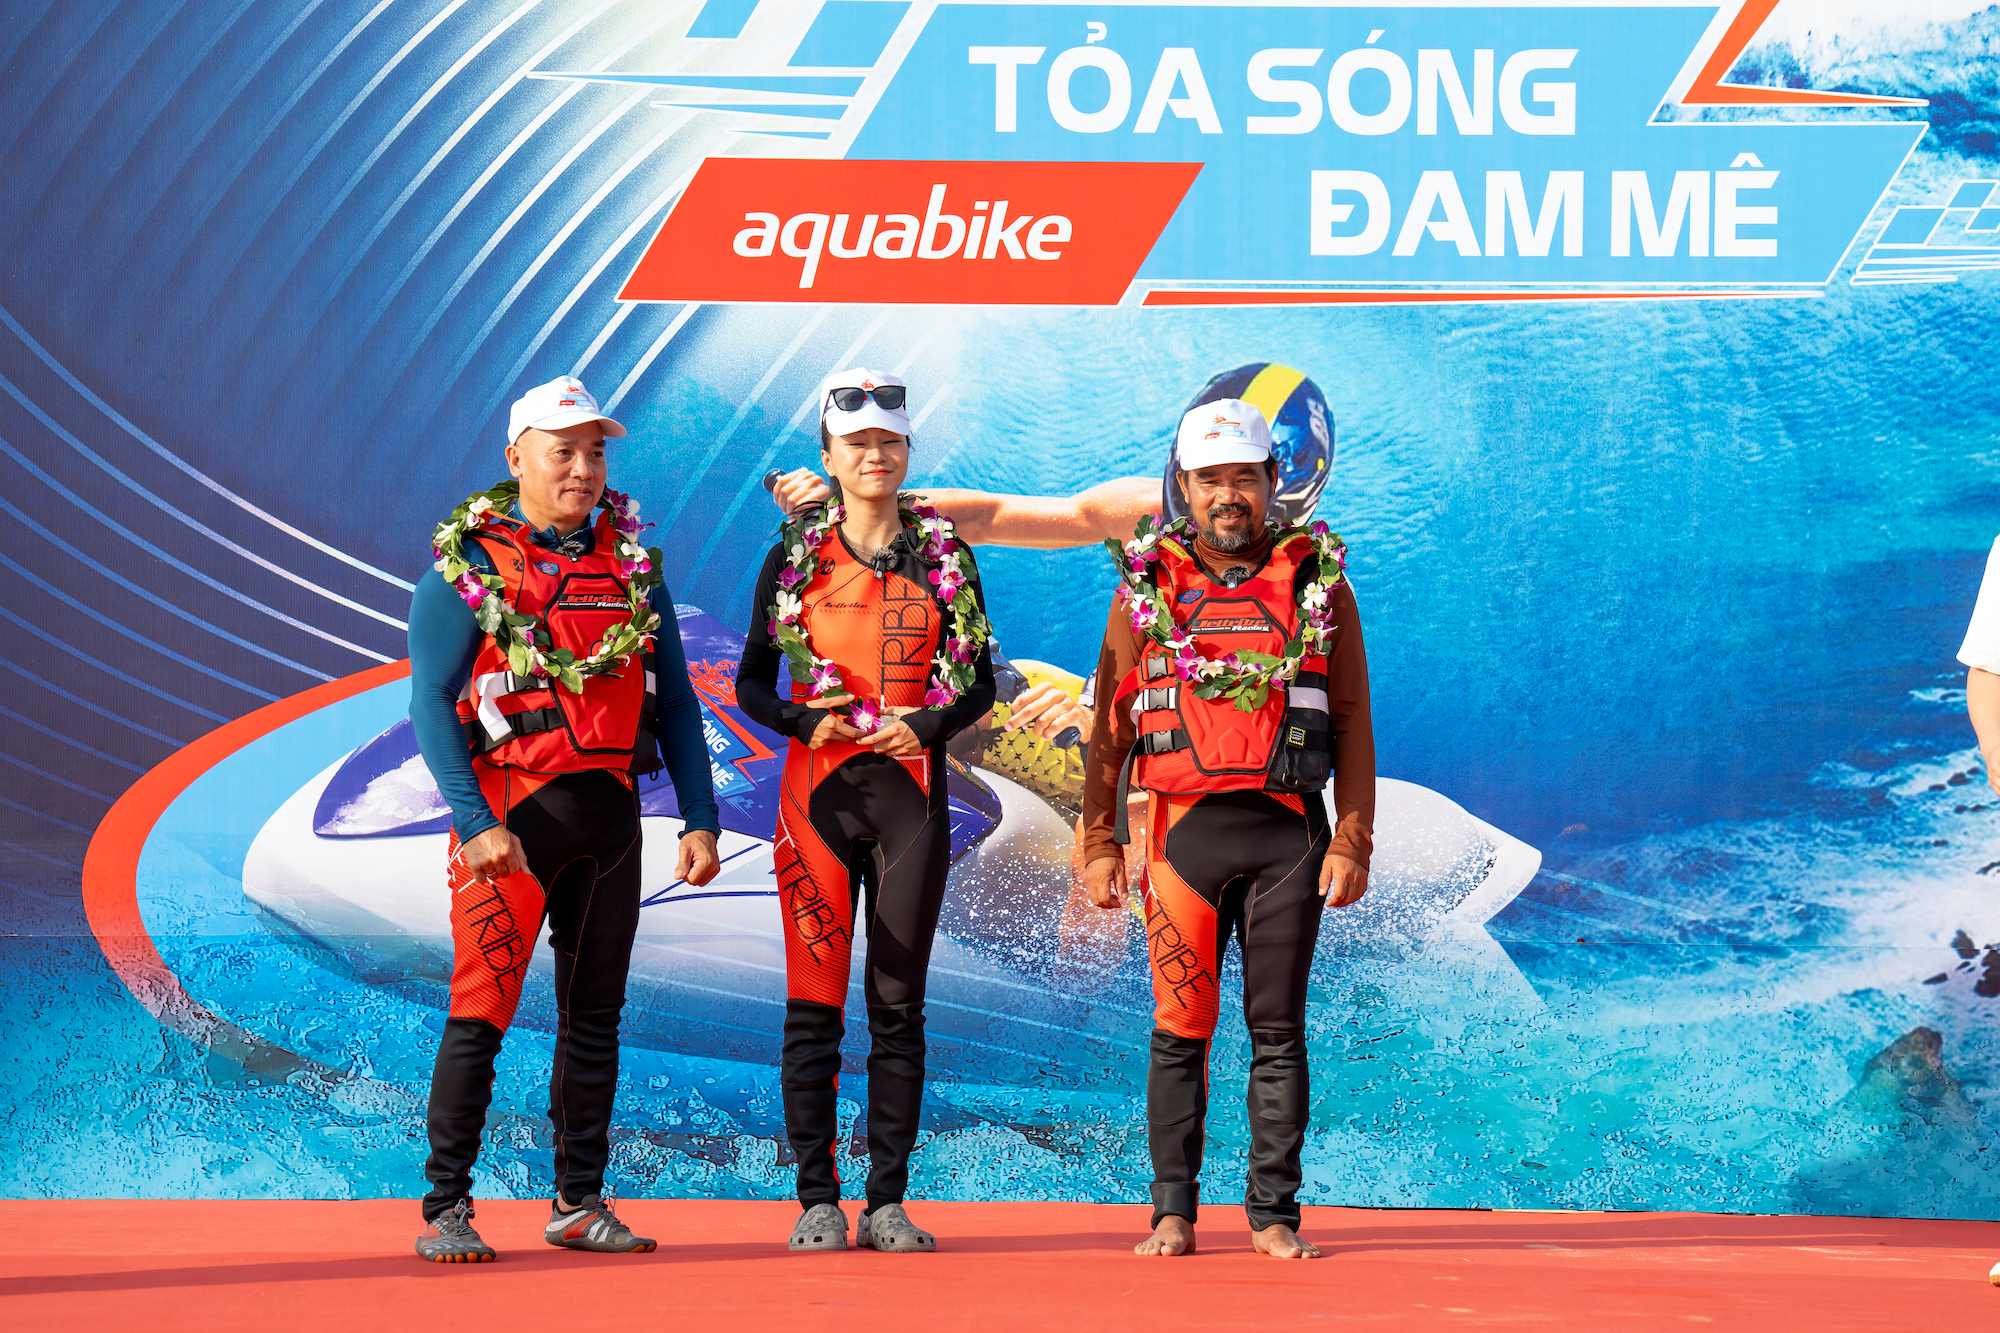 Tỏa sóng đam mê Aquabike: Các huấn luyện viên quốc tế khoe thành tích khủng